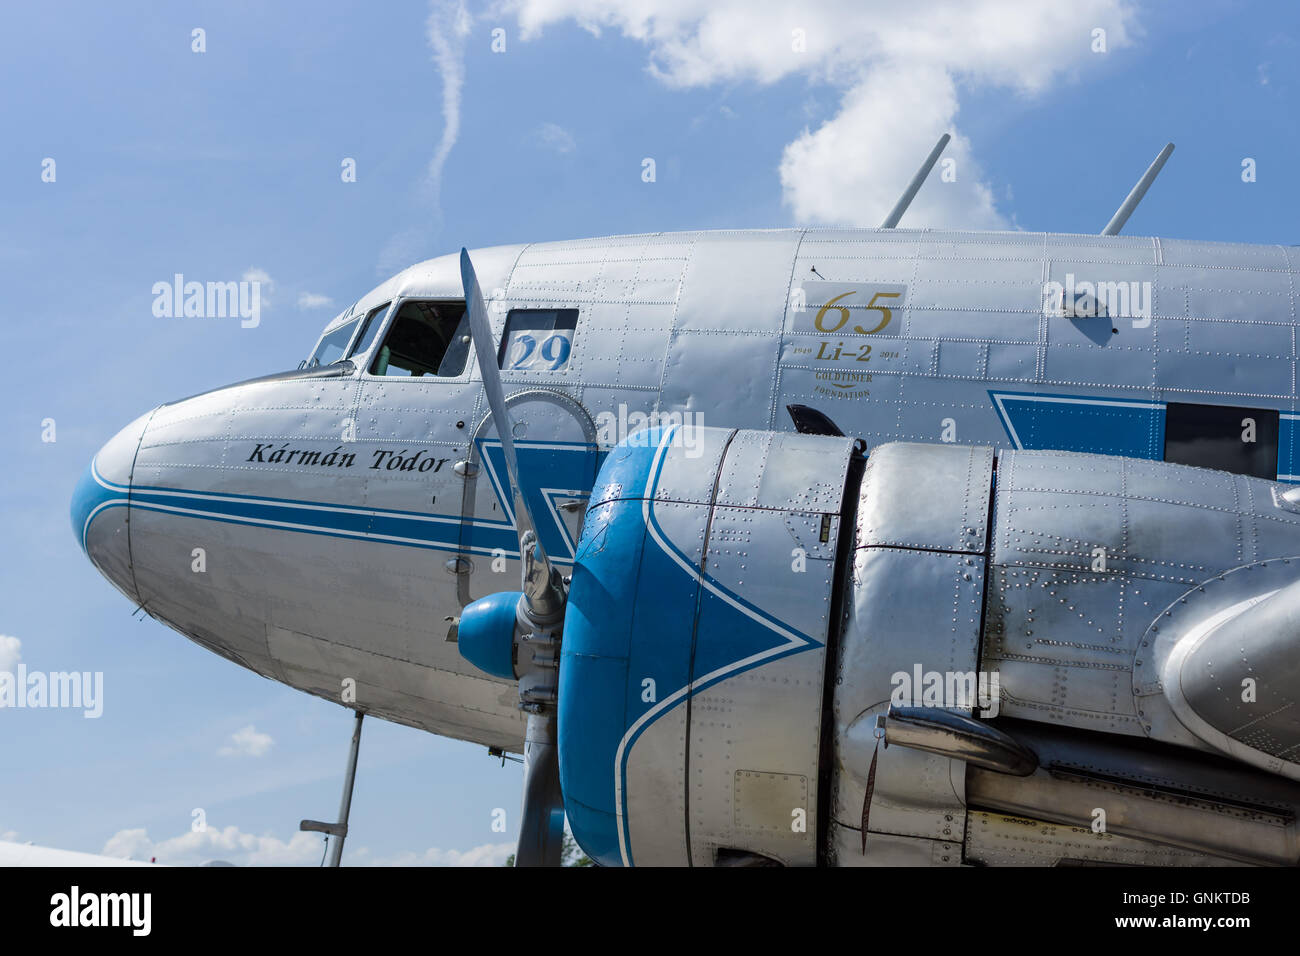 BERLIN, ALLEMAGNE - 03 juin 2016 : Avion soviétique Lisunov Li-2, compagnie aérienne hongroise alev'. ILA Berlin Air Show Exhibition 2016 Banque D'Images